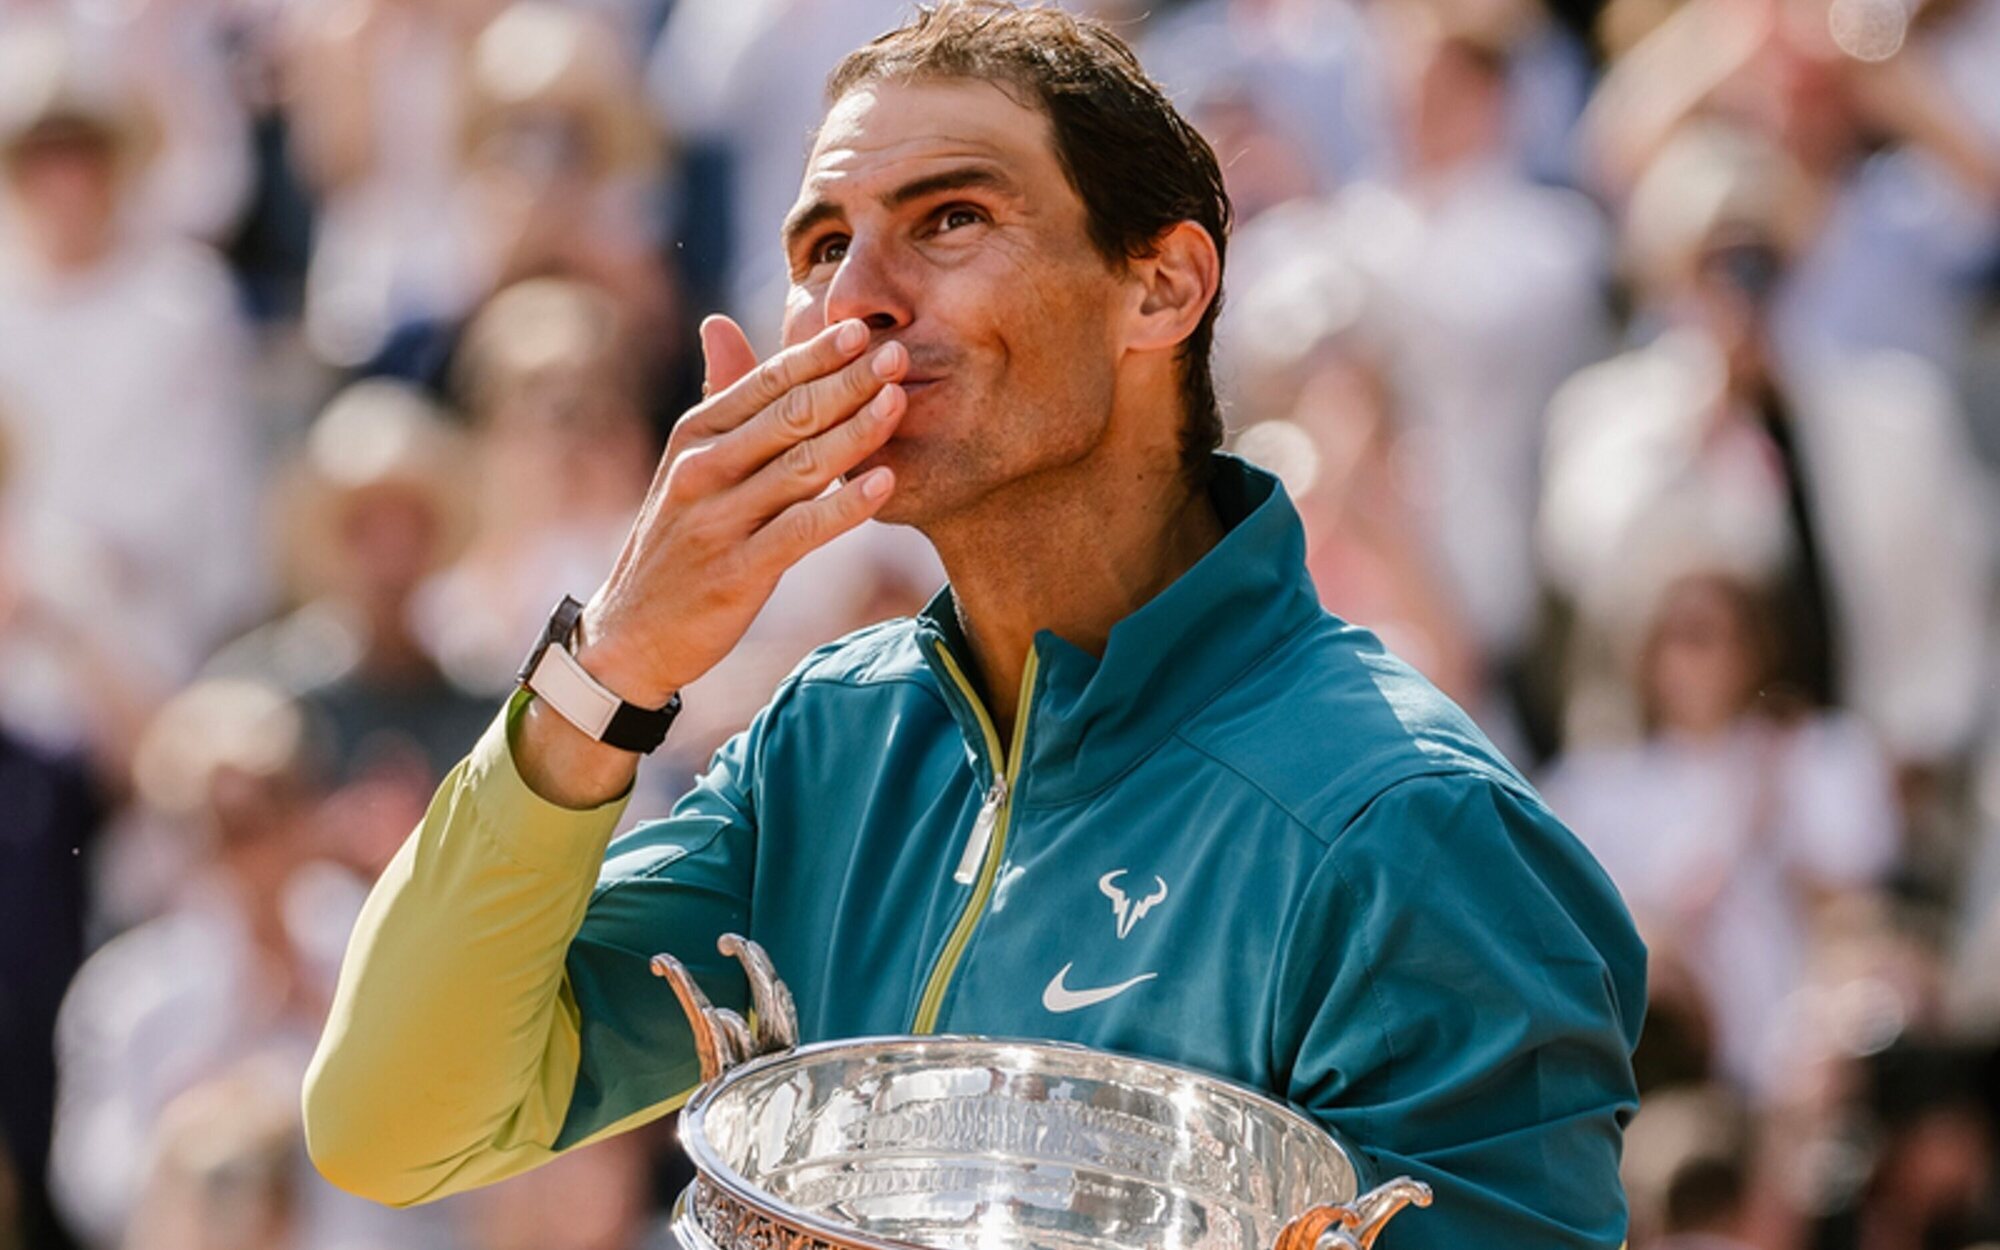 DMAX adelanta a Cuatro y laSexta con la victoria de Rafa Nadal en el Roland Garros (14,3%)